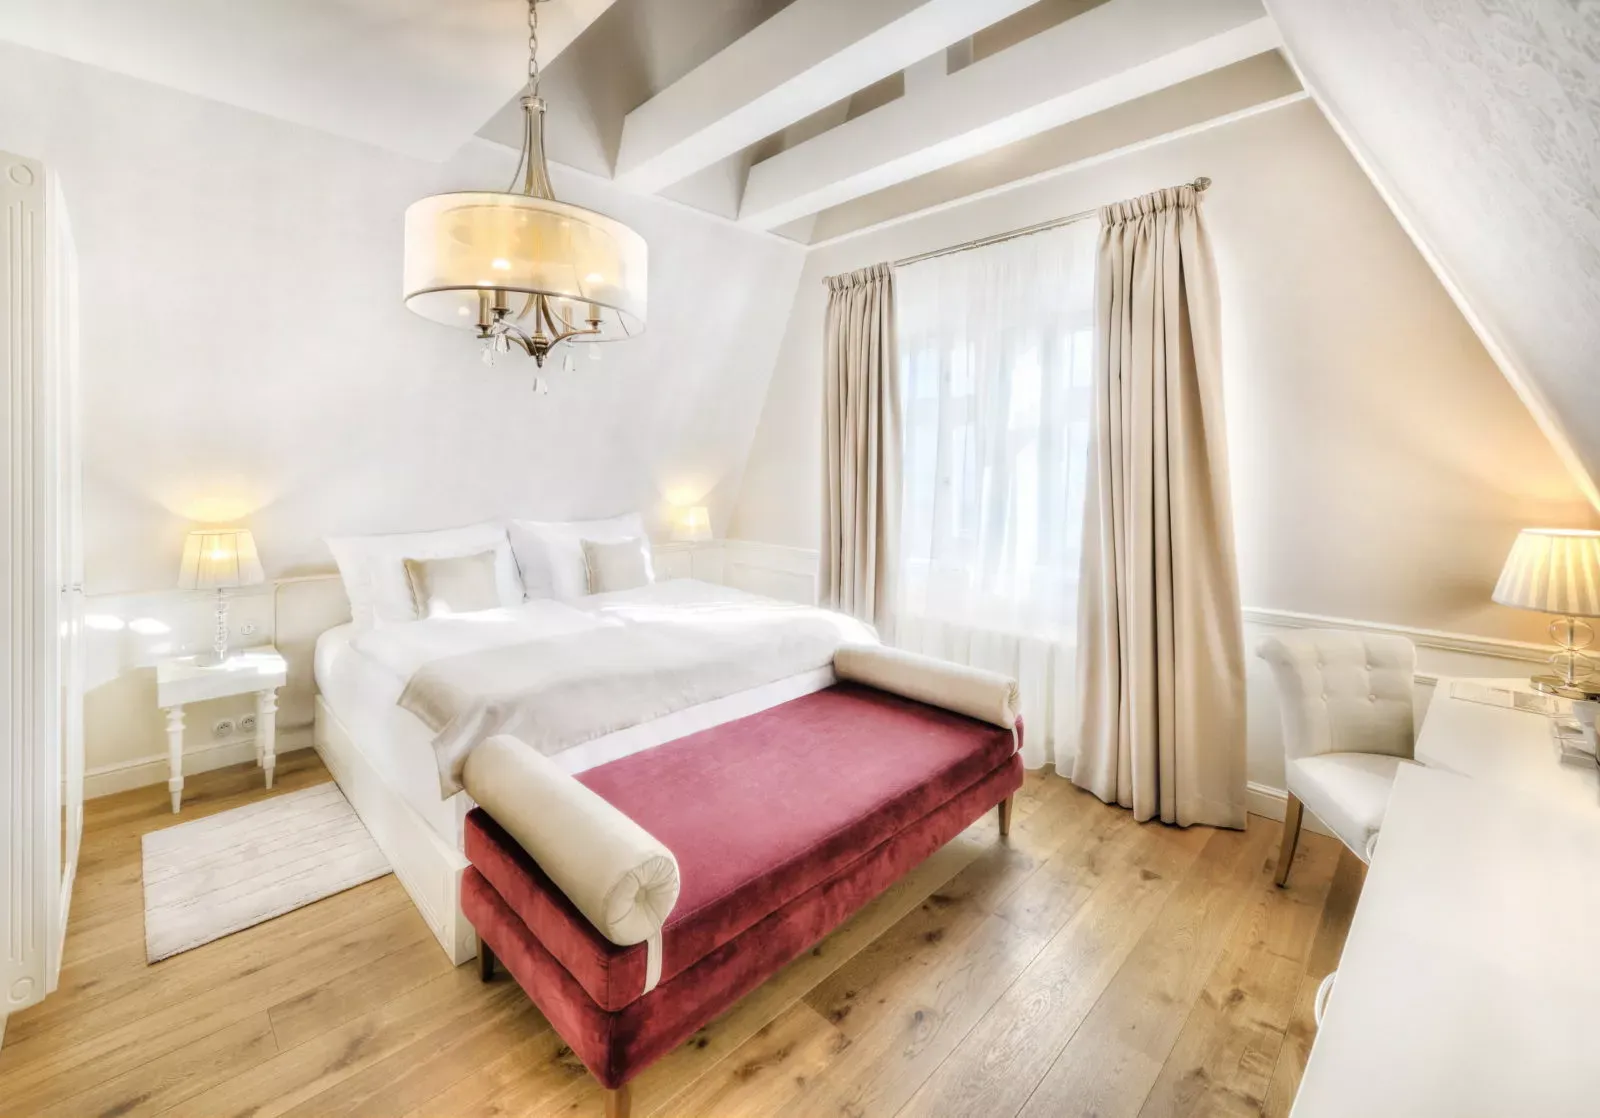 2 Apartmán MAximilián Hotel Lomnica interier 2017 18 – kópia – kópia